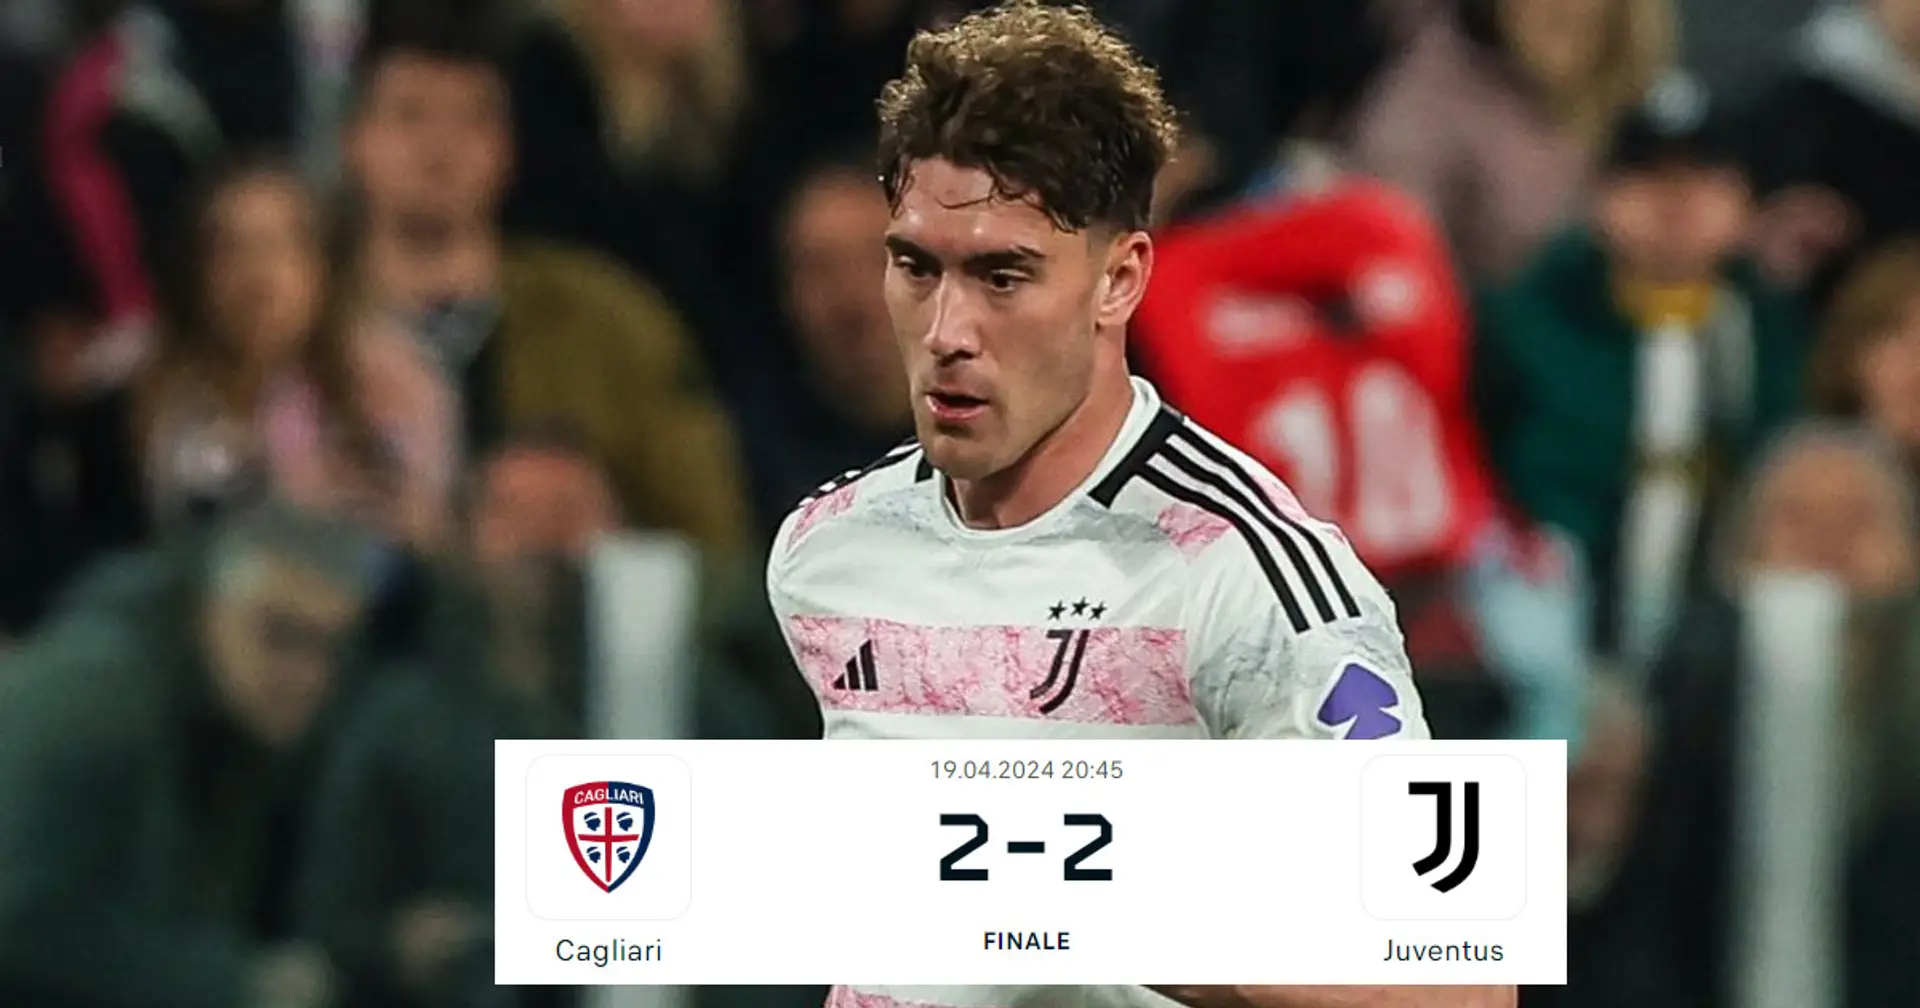 La Juventus si salva nel finale, evitata la figuraccia, col Cagliari è 2-2: statistiche, tabellino e sintesi del match